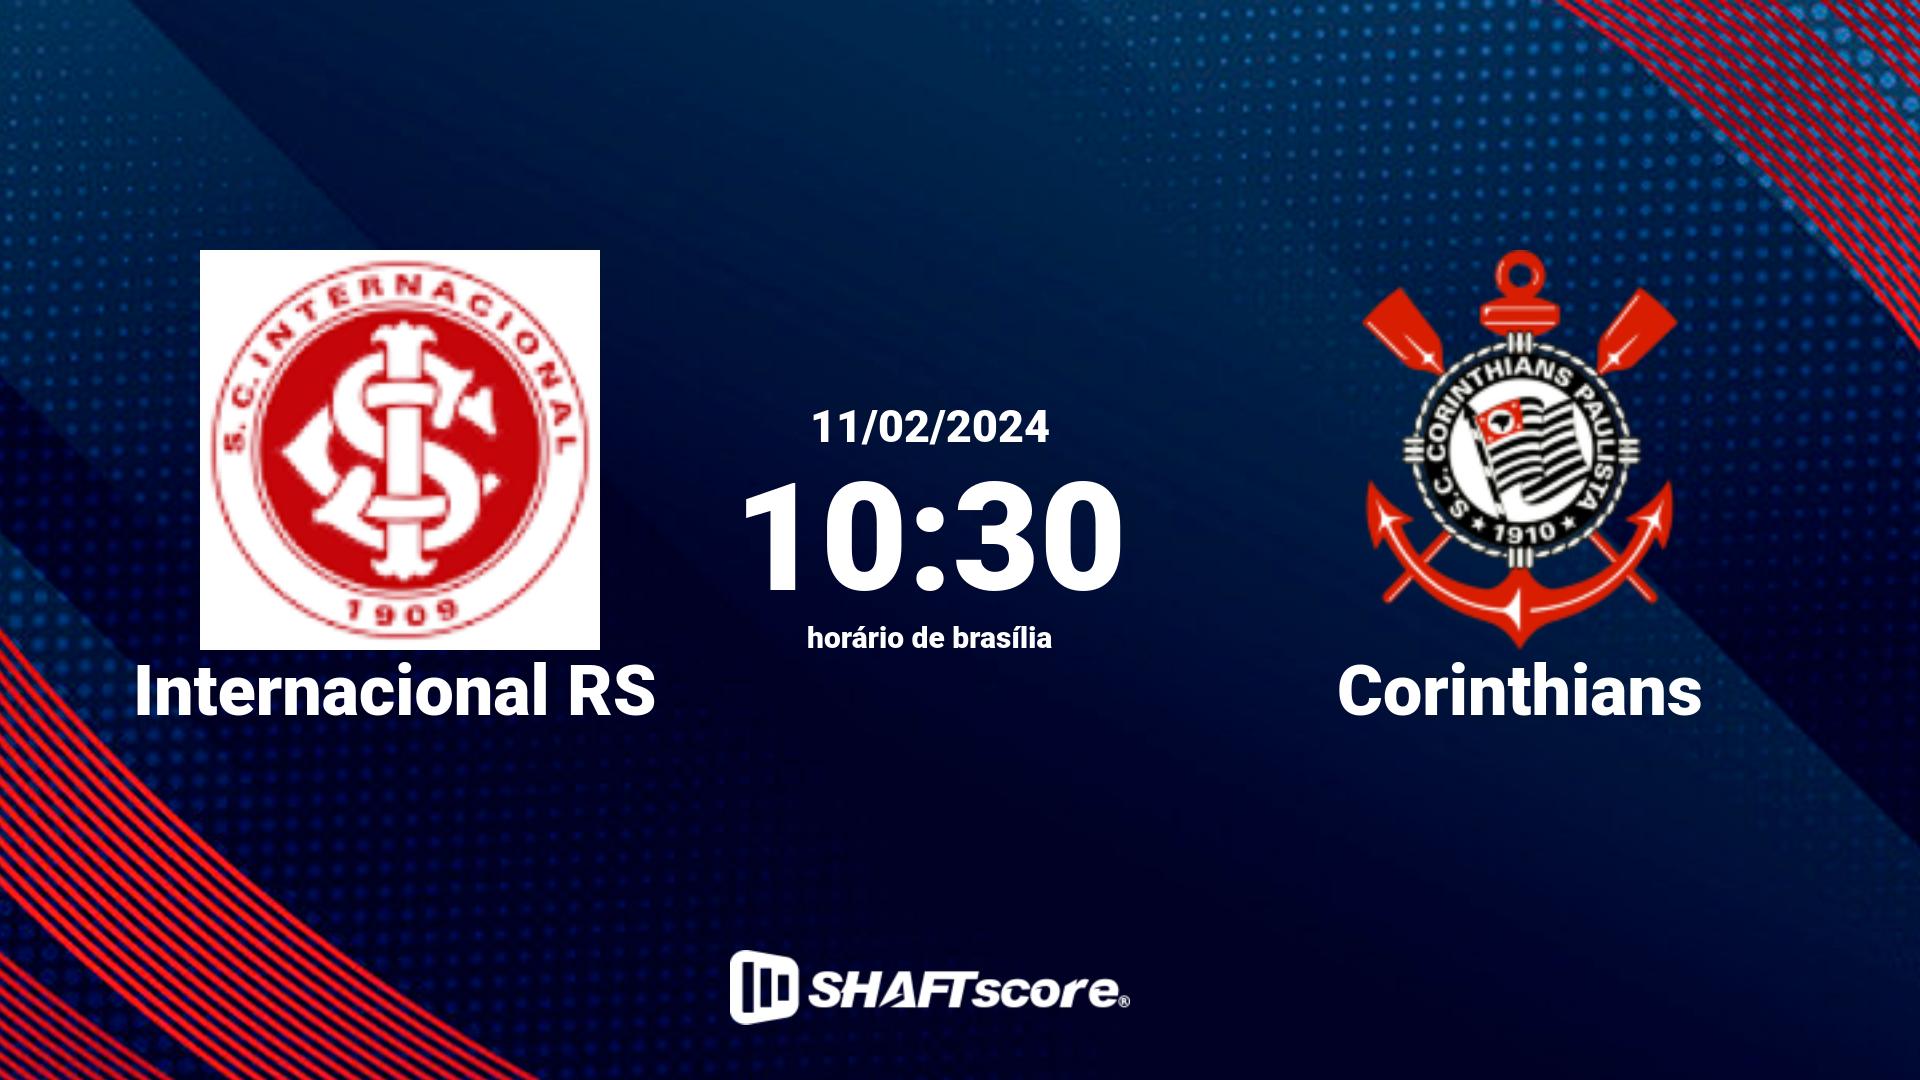 Estatísticas do jogo Internacional RS vs Corinthians 11.02 10:30